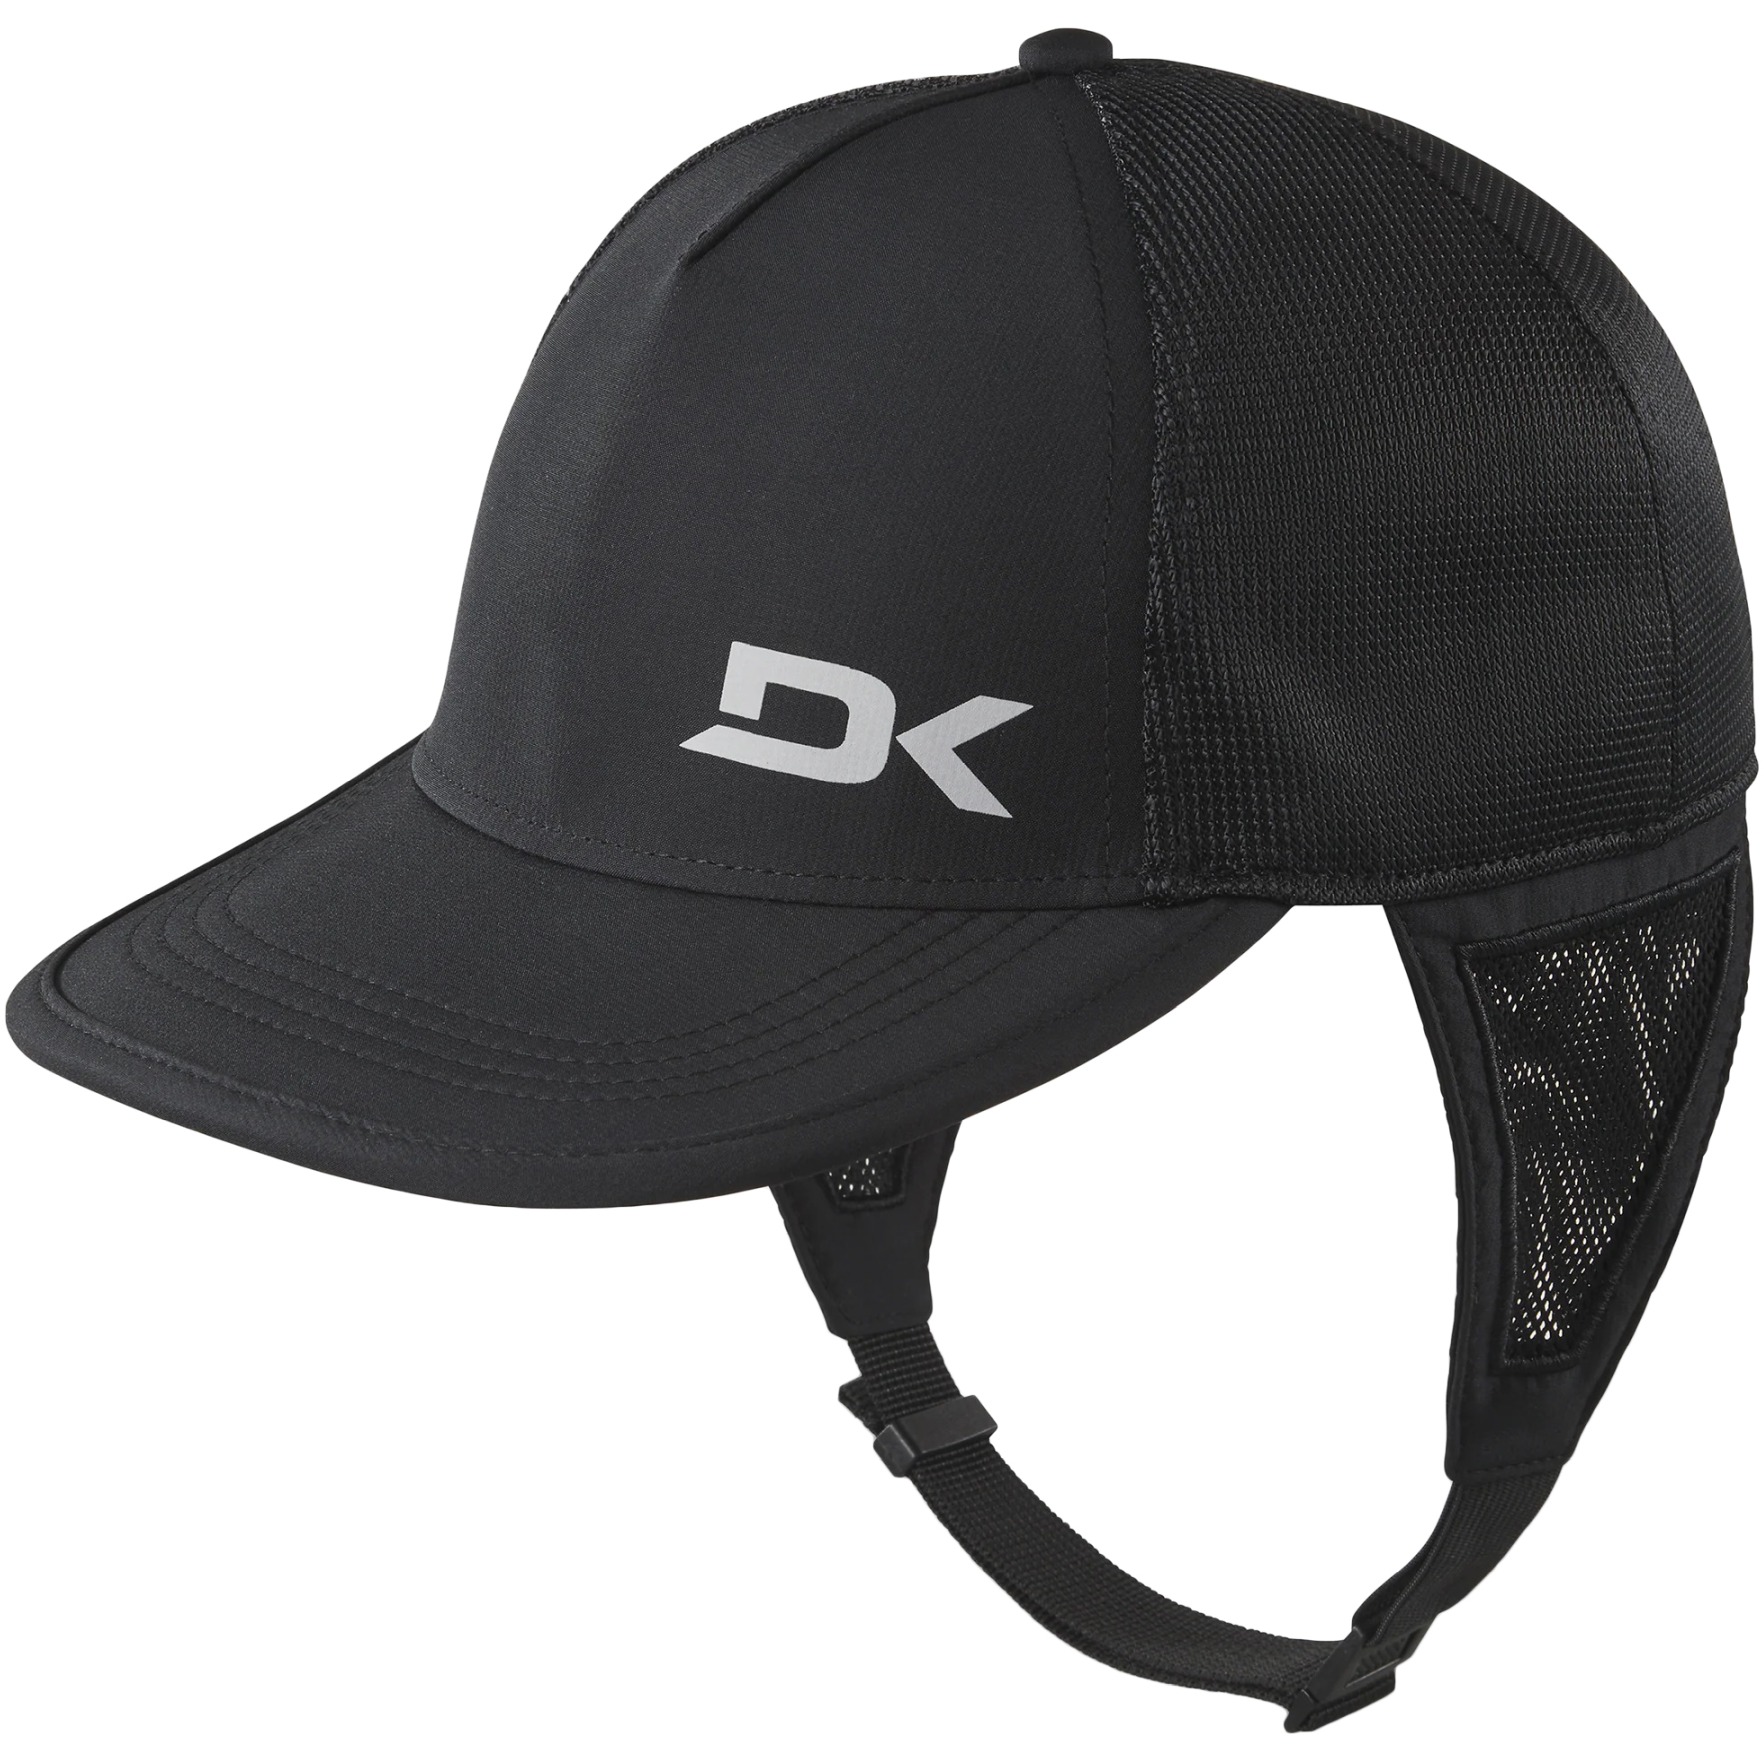 Productfoto van Dakine Surf Trucker Cap - zwart